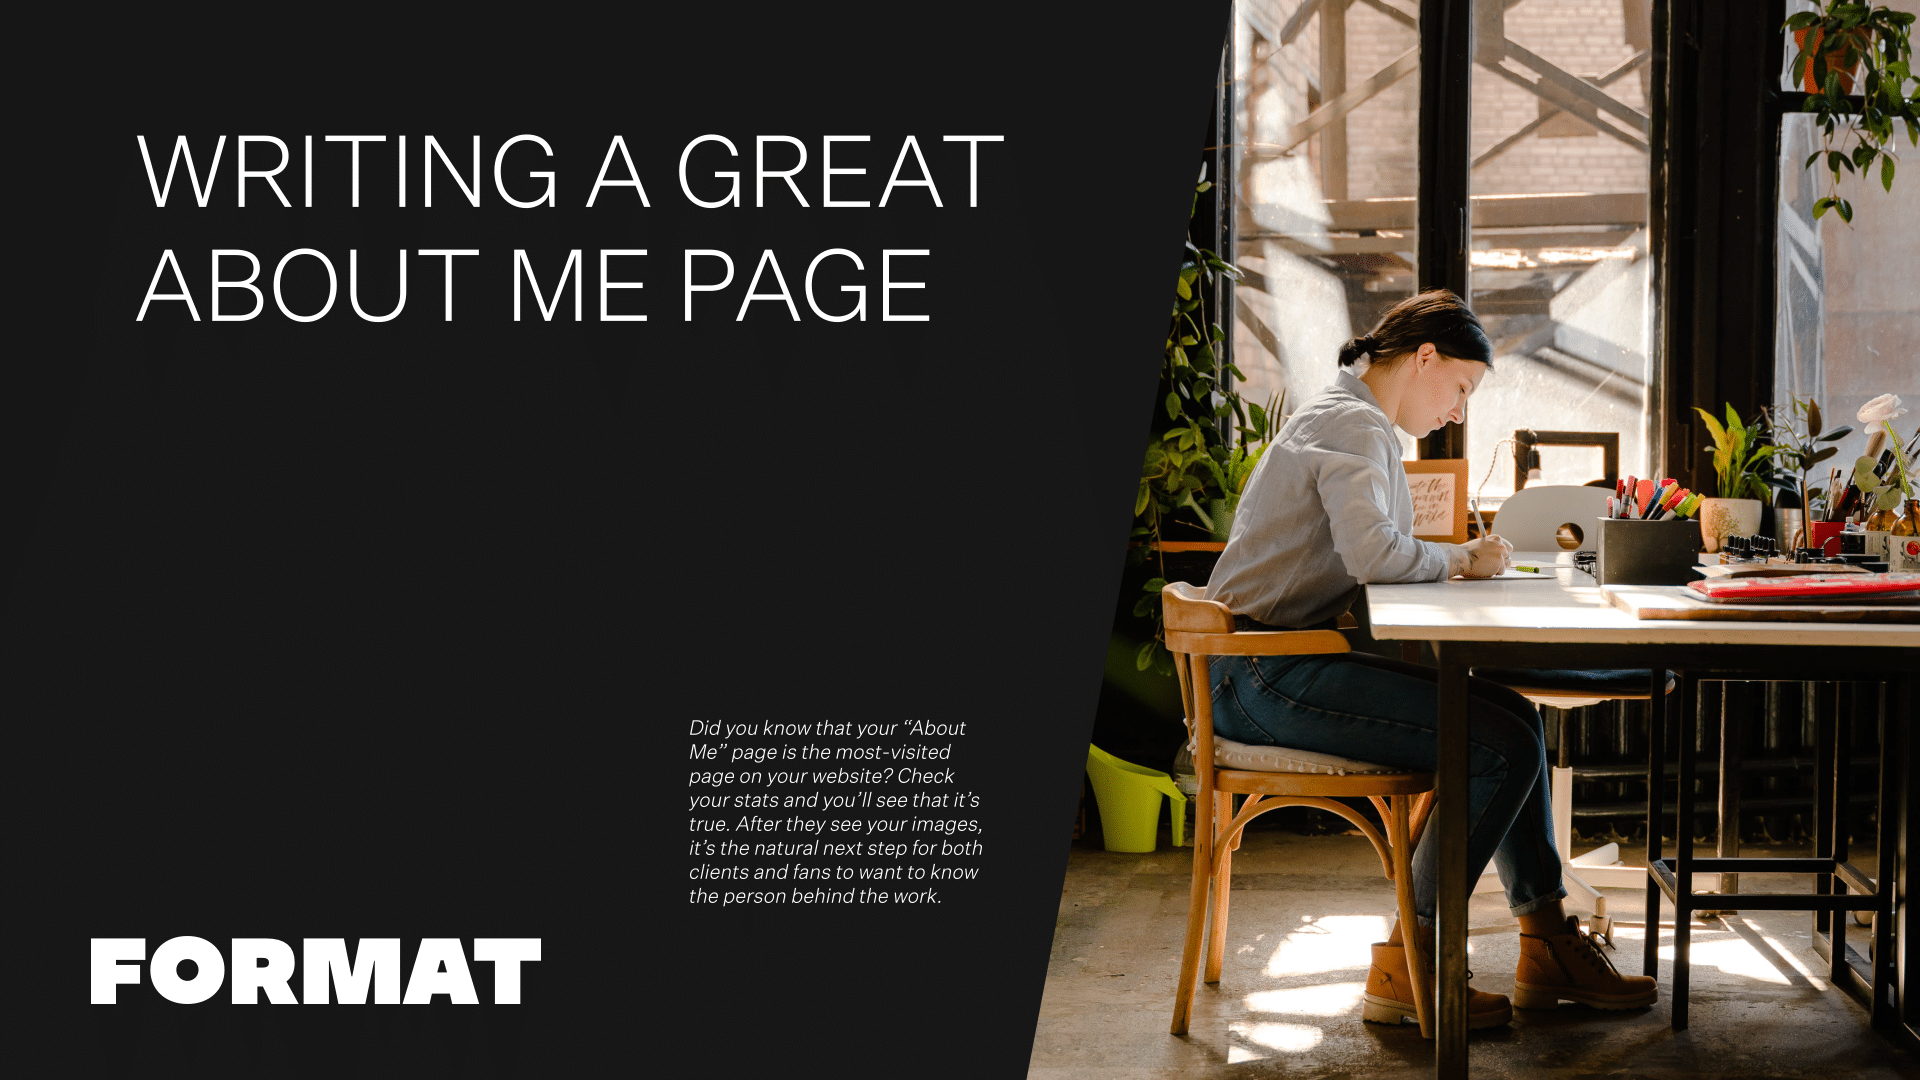 Le texte de l'image se lit comme suit : "Writing a Great About Me Page" et comprend une image d'une jeune fille assise à un bureau en train d'écrire.